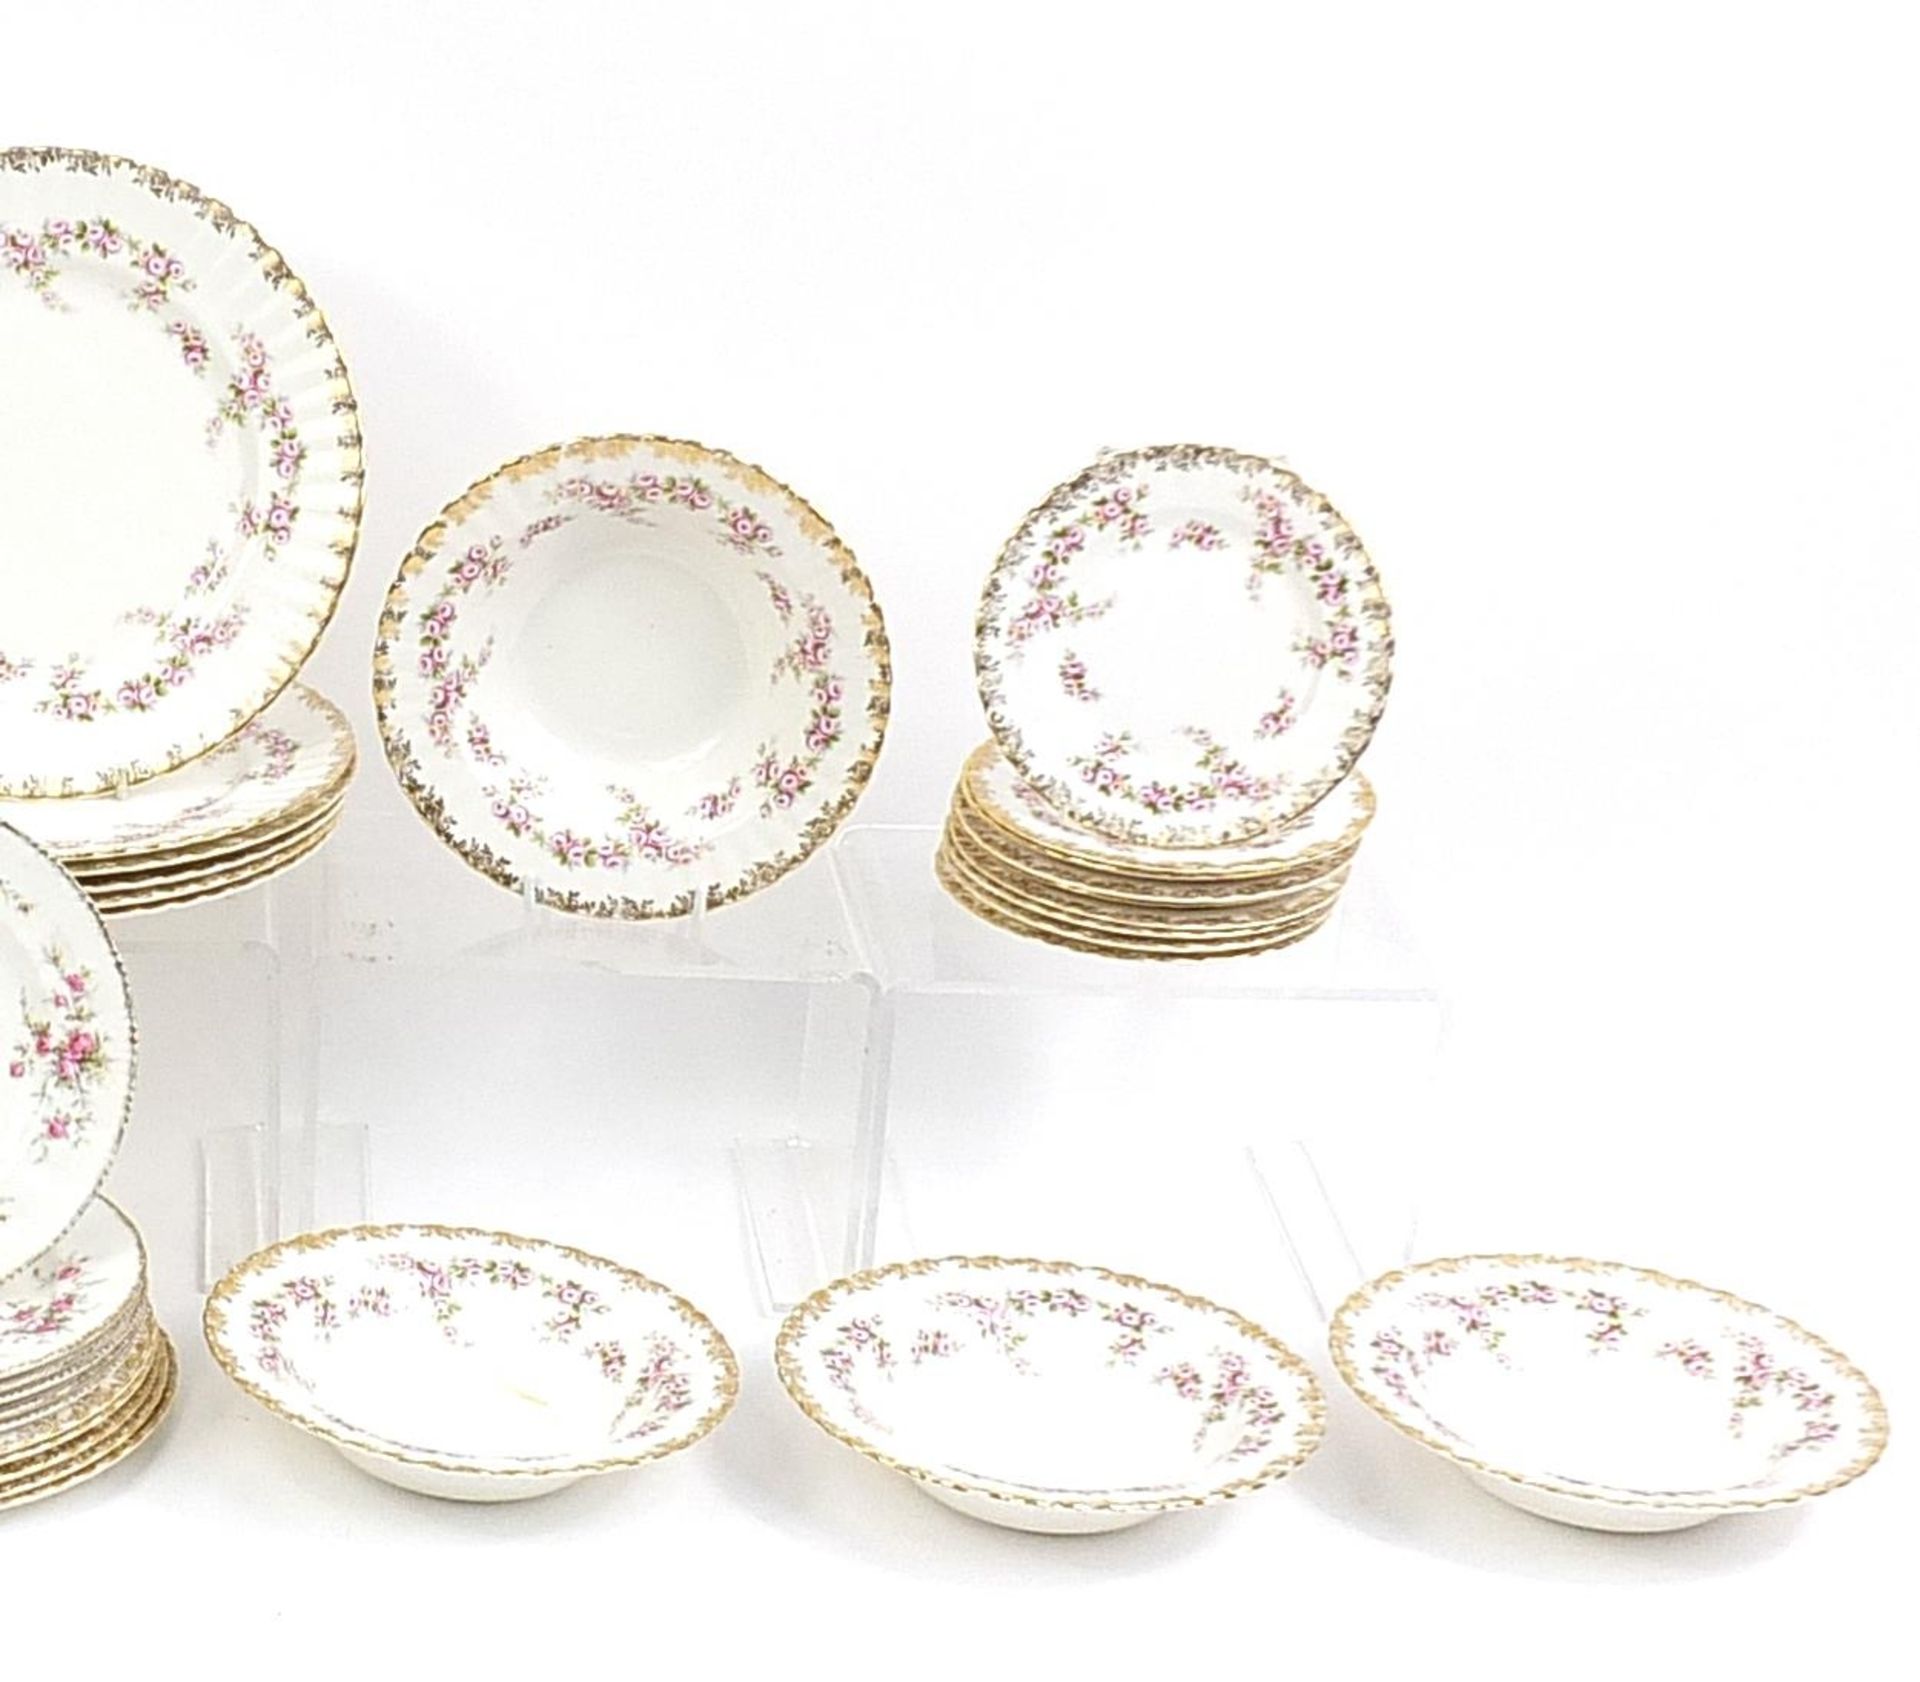 Royal Albert Dimiti Rose tea and dinner ware including a large platter, the platter 35cm in diameter - Bild 3 aus 3